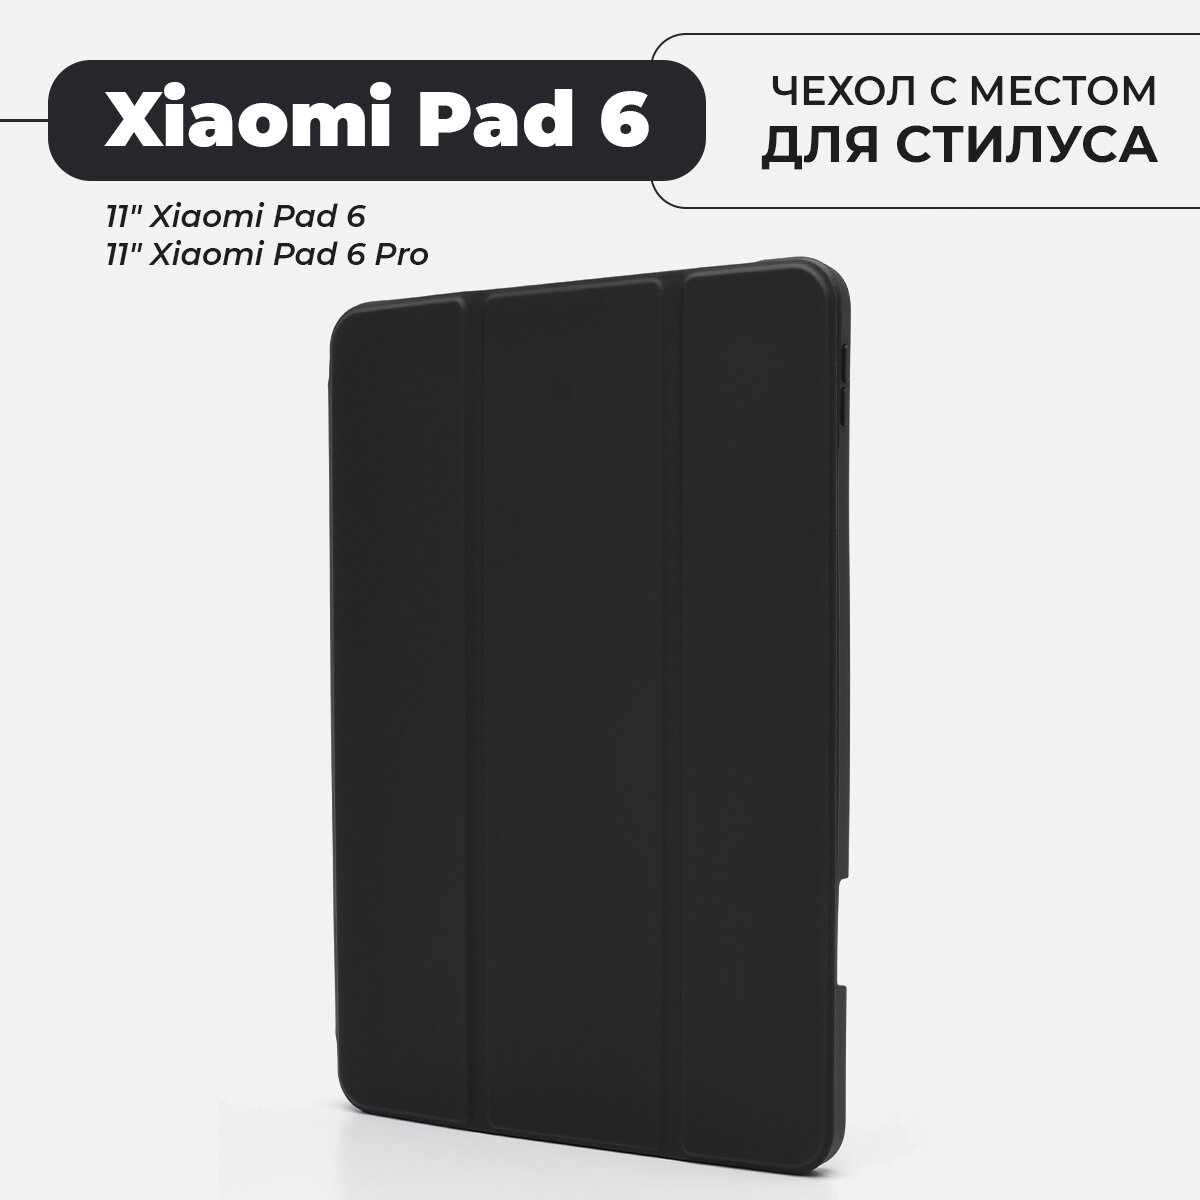 Чехол премиальный для планшета Xiaomi Pad 6 / 6 Pro, с местом для стилуса, черный